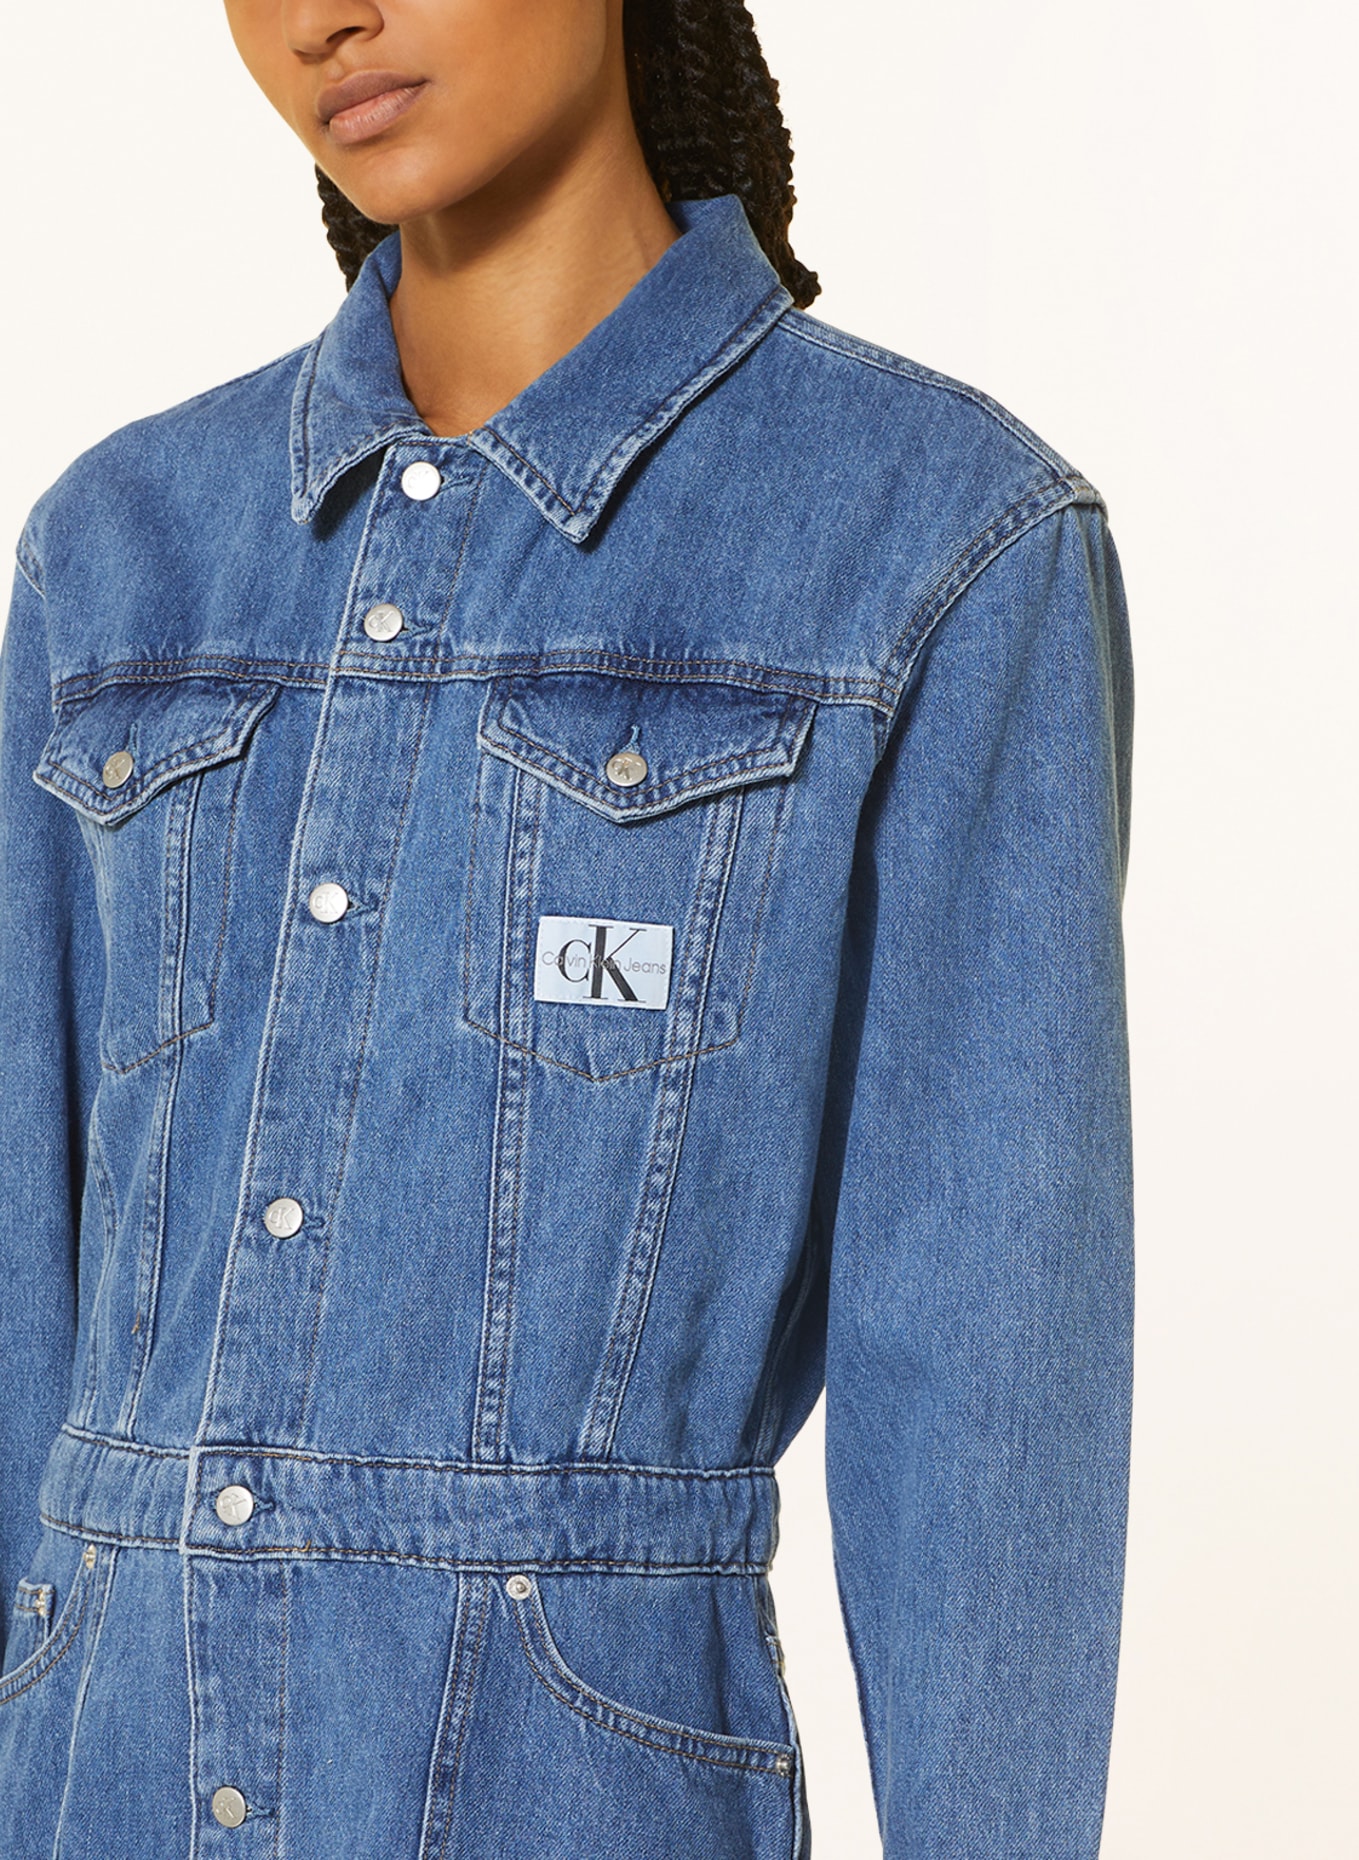 Calvin Klein Jeans in 1a4 denim Jeanskleid medium